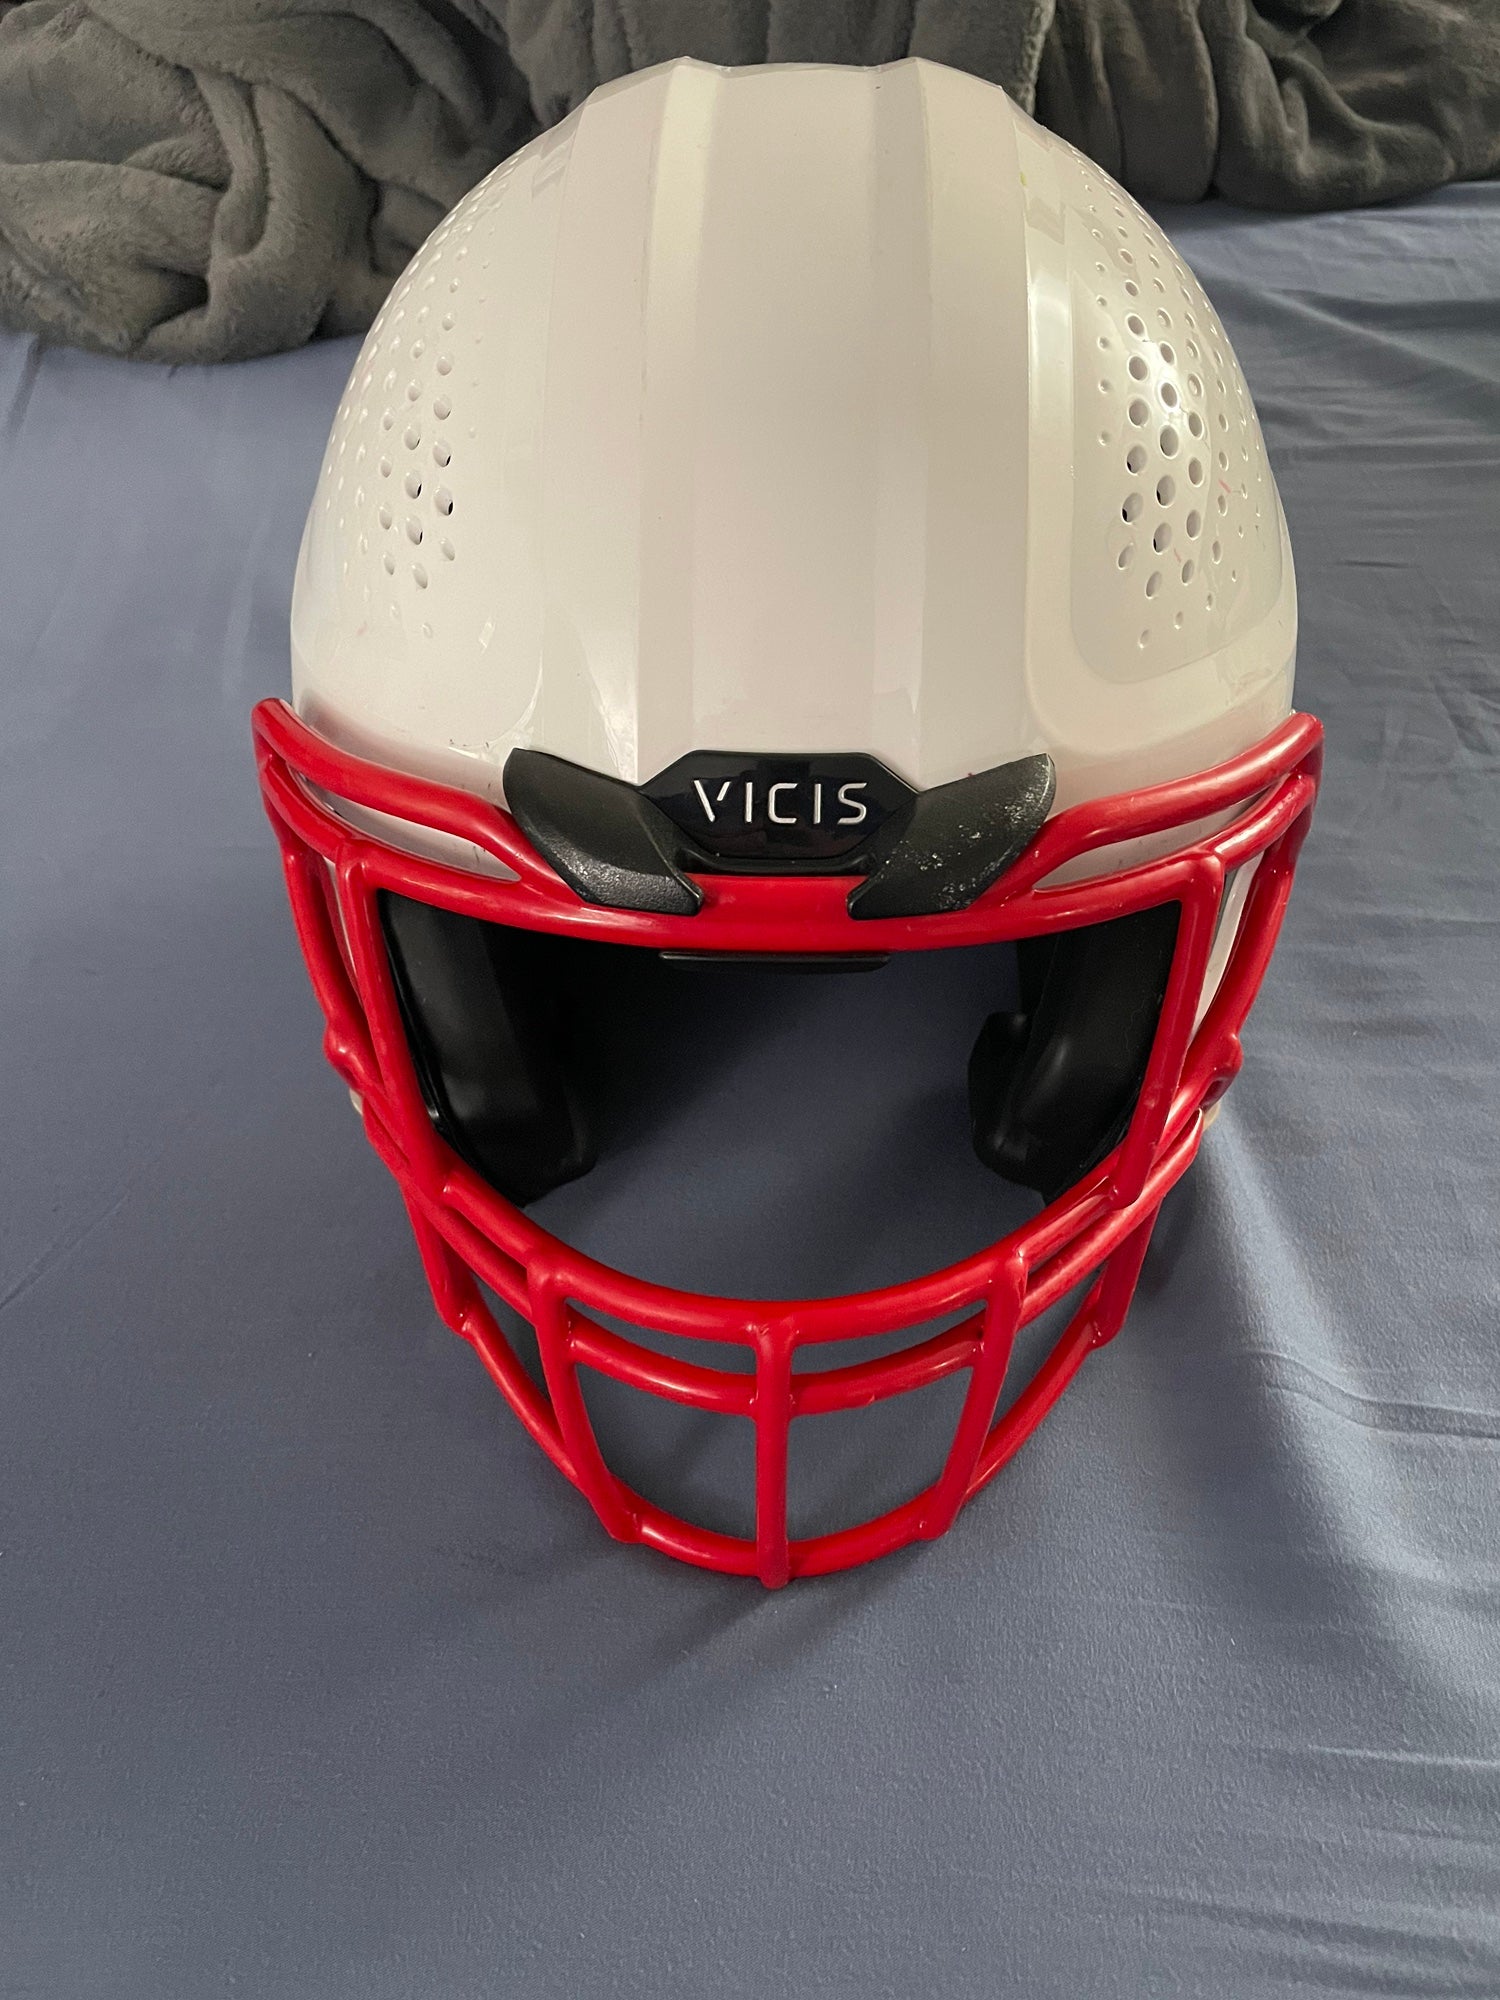 アメフトヘルメット vicis 01 - アメリカンフットボール